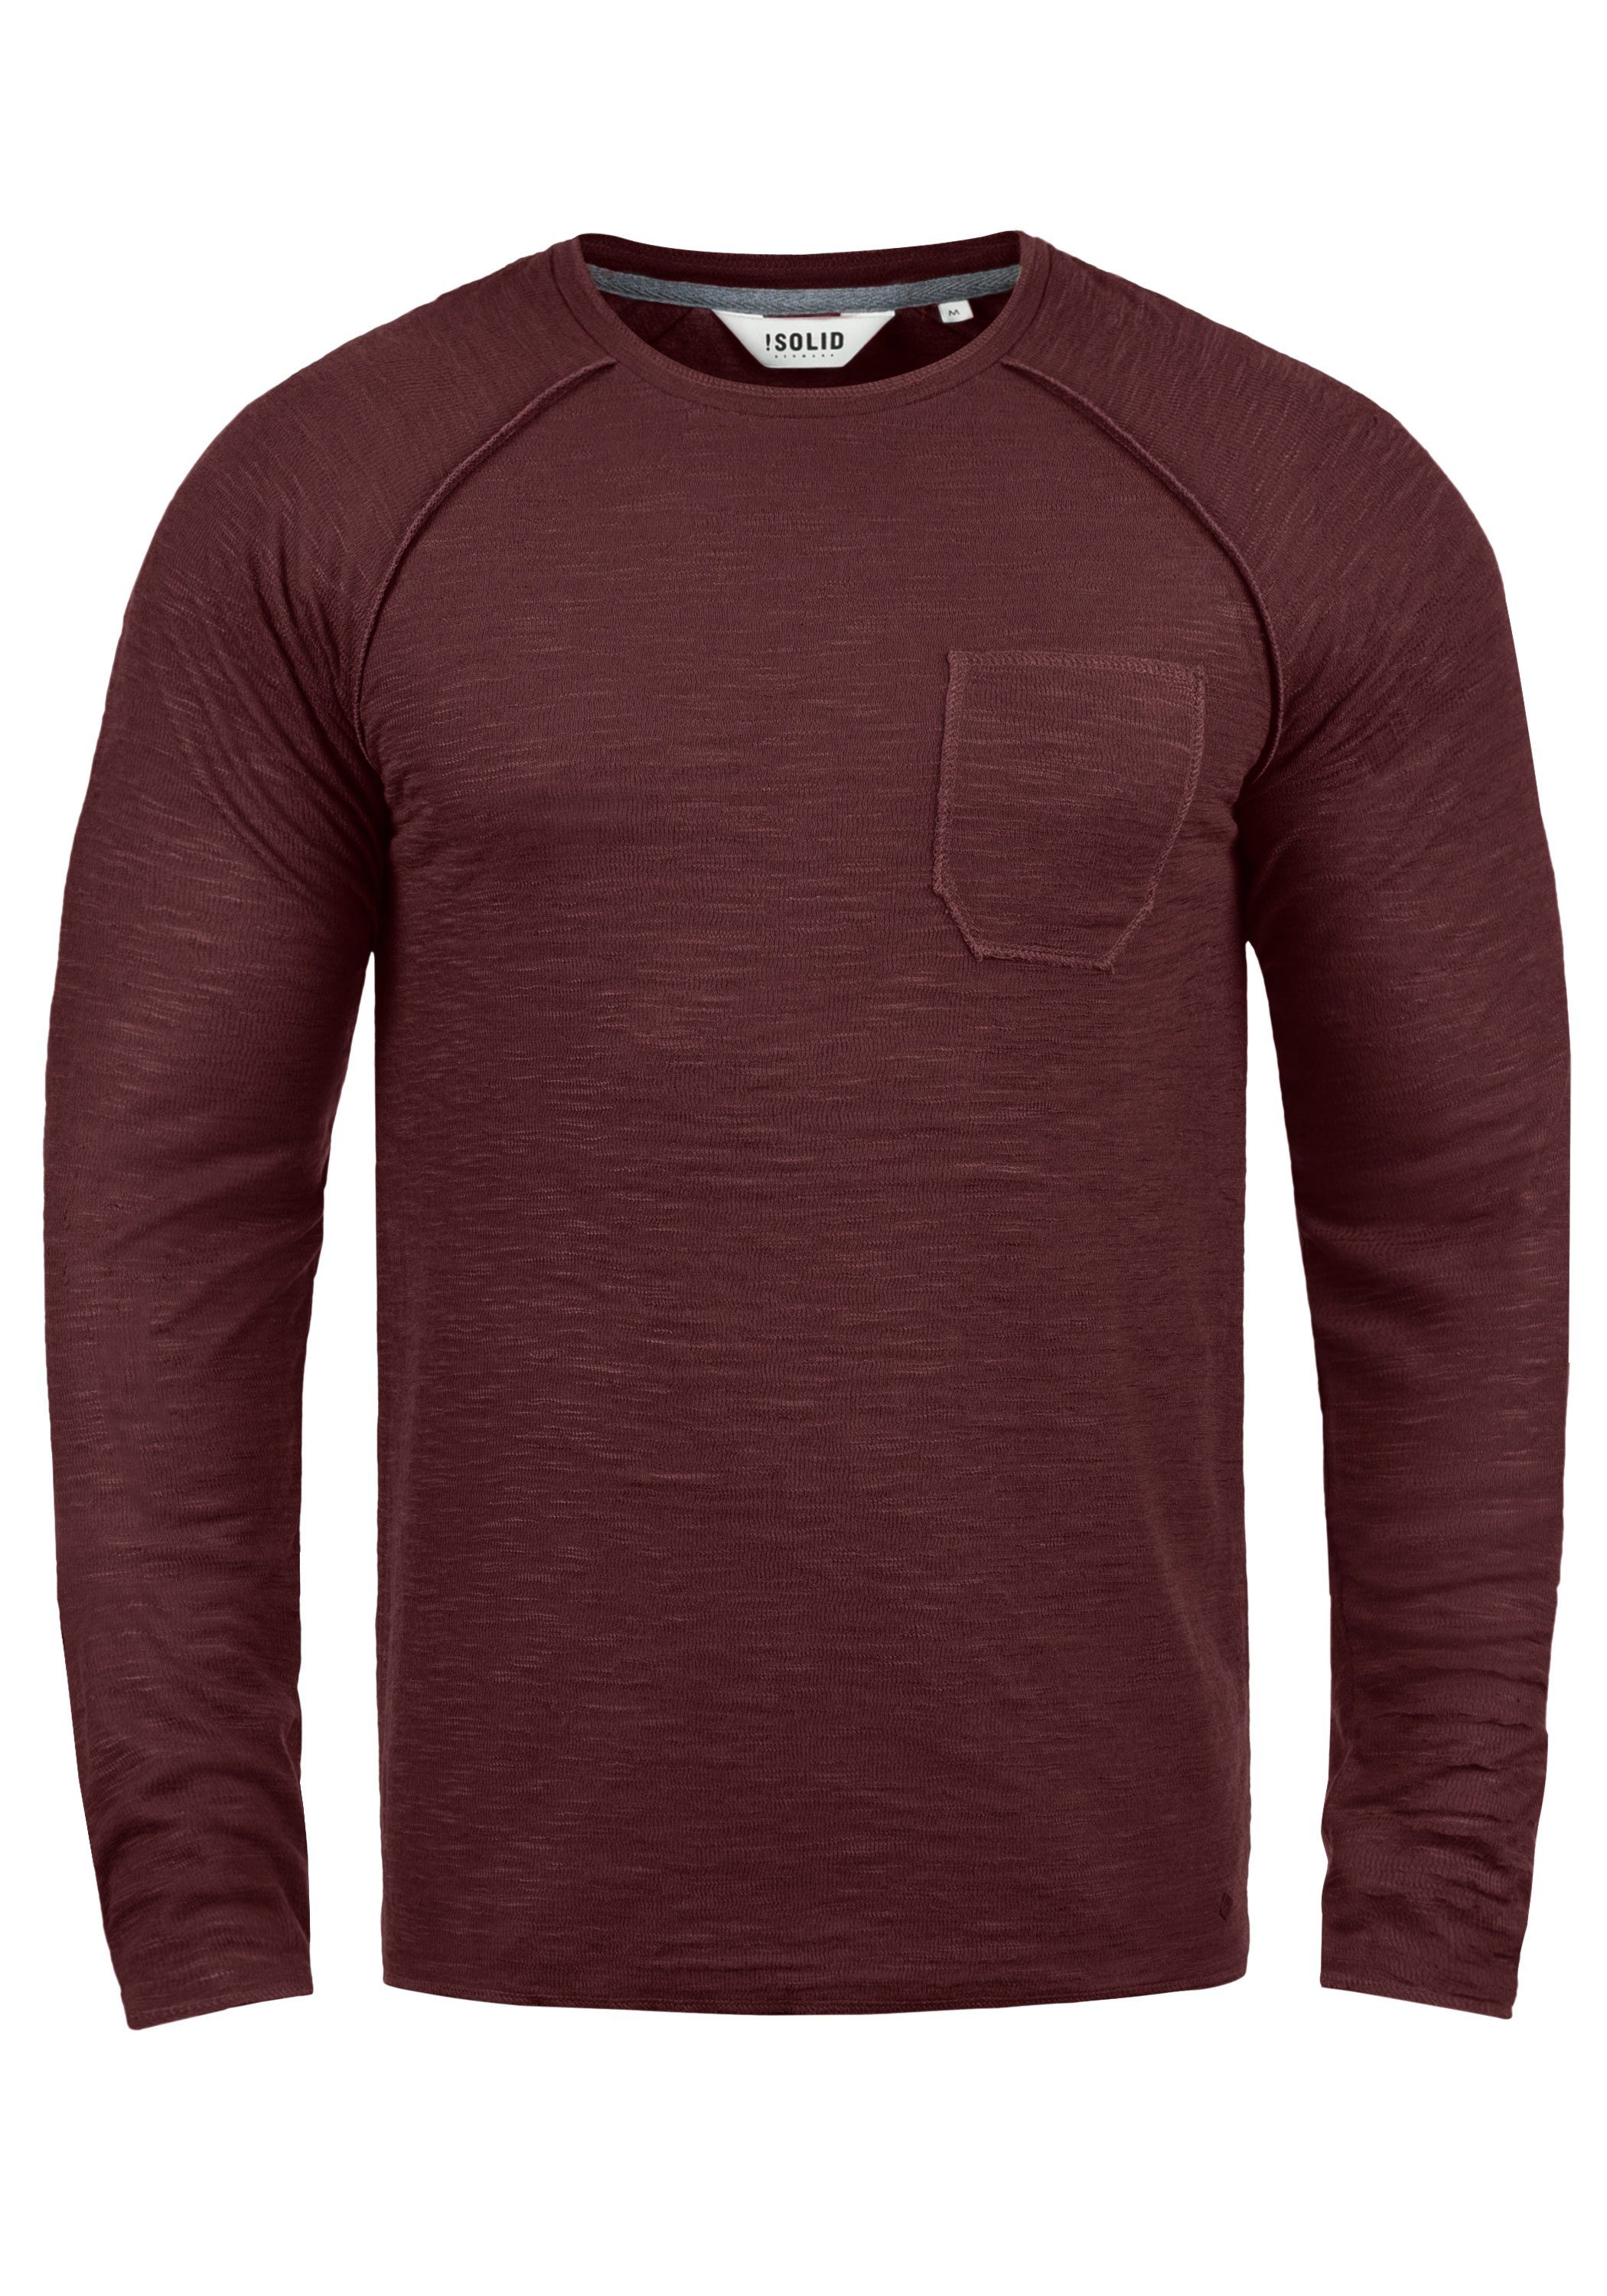 (0985) Sweatshirt Red SDDon !Solid Sweatpullover Brusttasche mit Wine